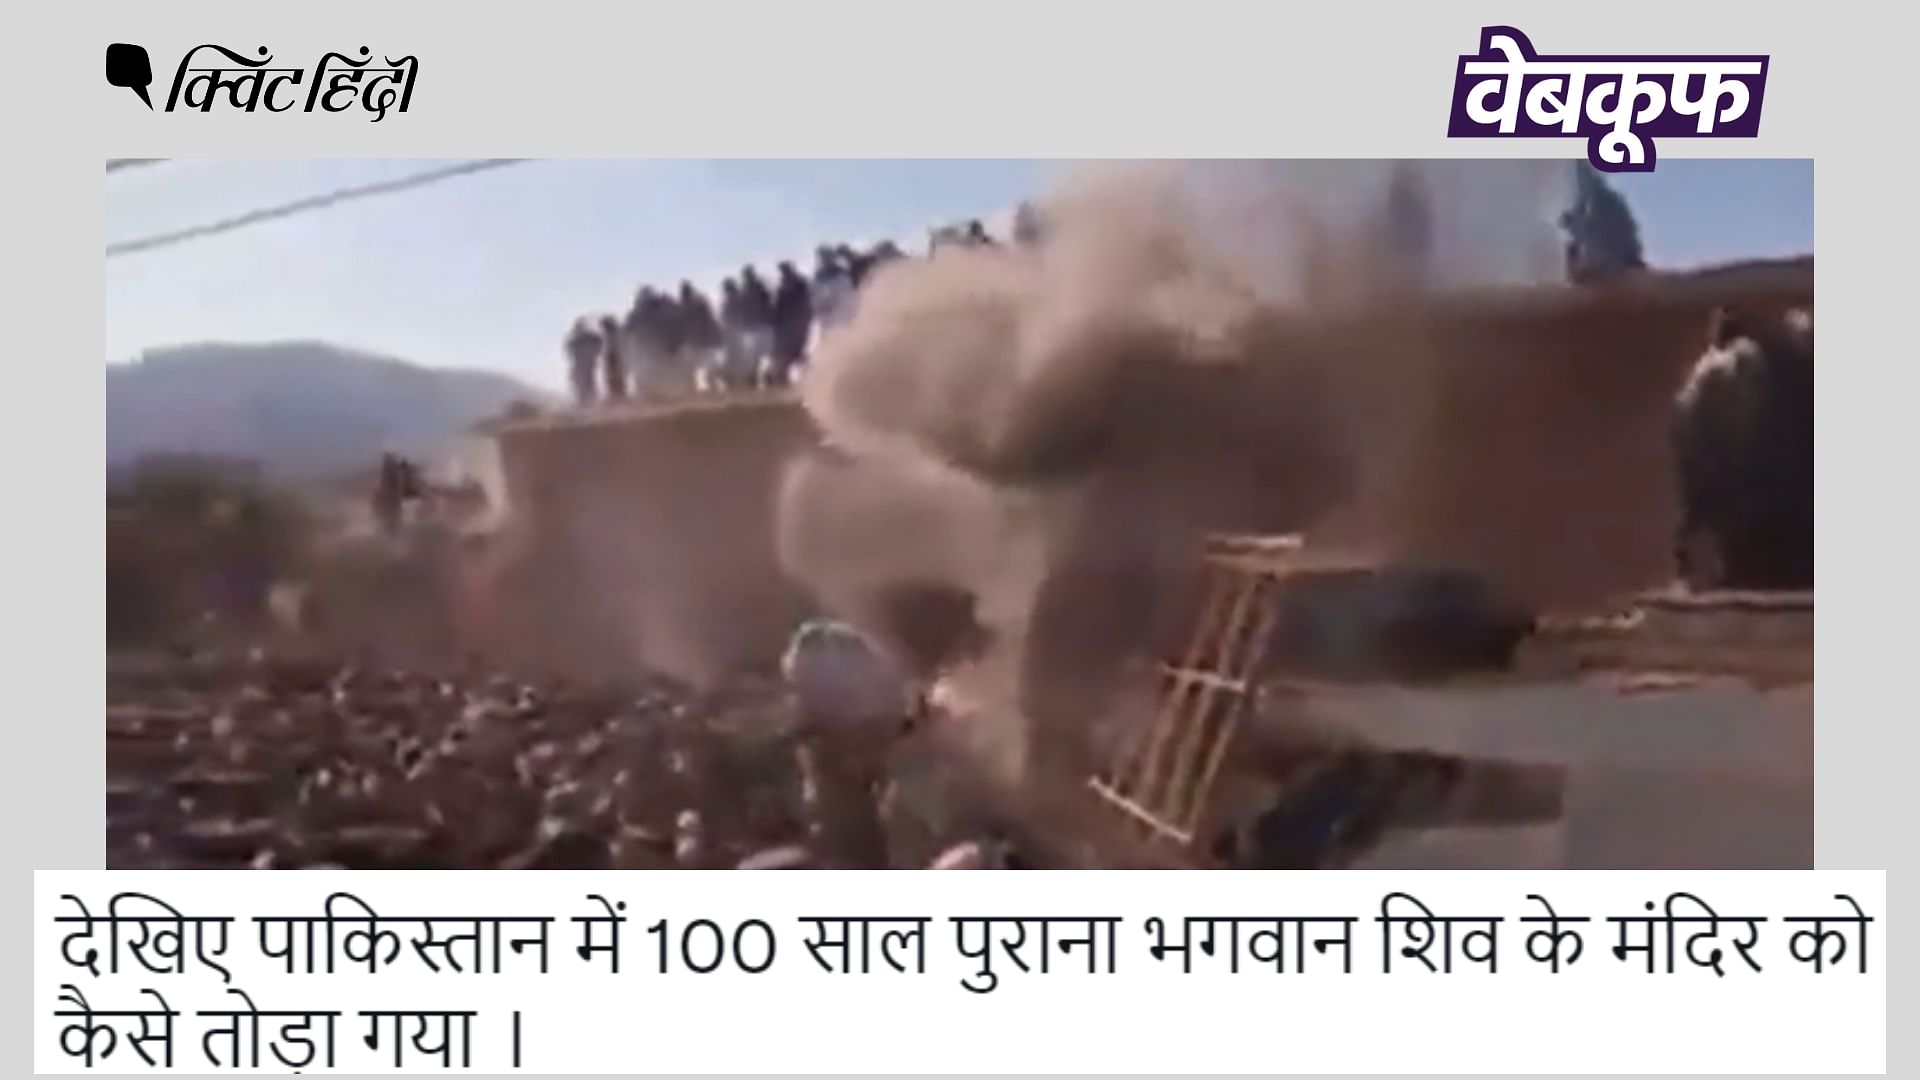 <div class="paragraphs"><p>पाकिस्तान में मंदिर तोड़ती भीड़ का वीडियो हाल का बताकर वायरल है&nbsp;</p></div>